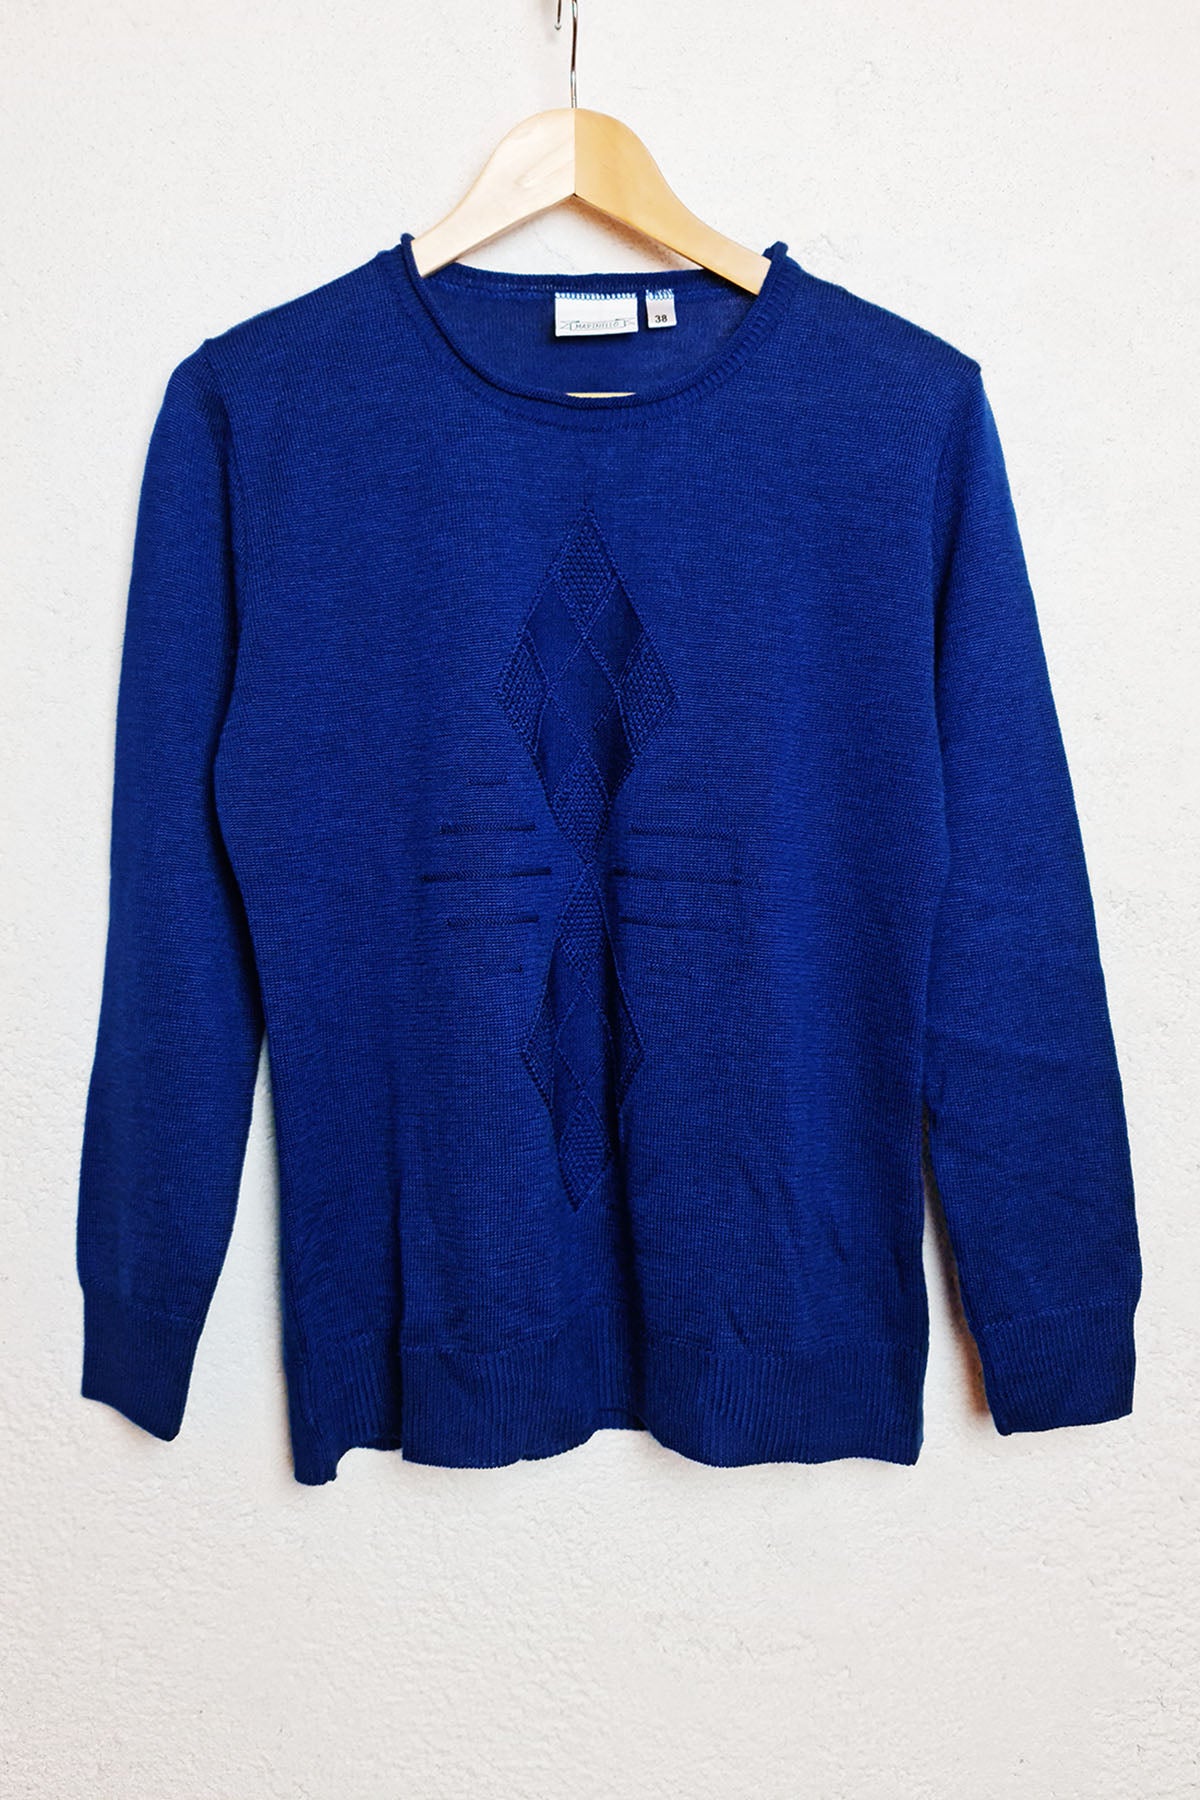 Royal Blue Vintage Pullover